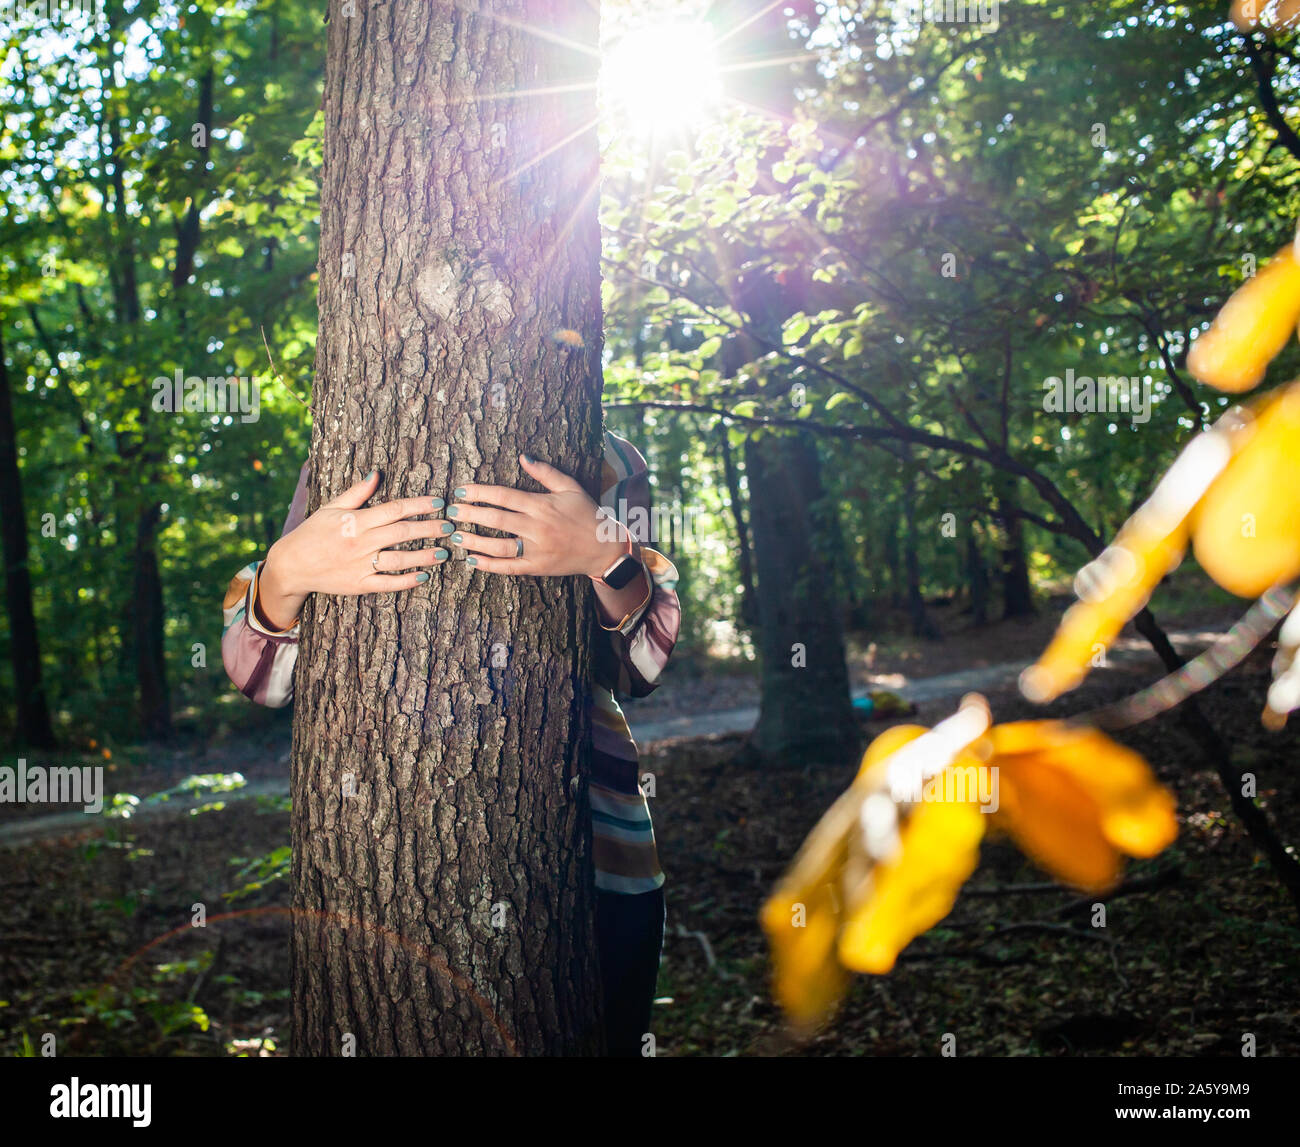 Frau Hände und umarmte einen Baum - Bekämpfung des Klimawandels, speichern Sie den Planeten Erde Stockfoto